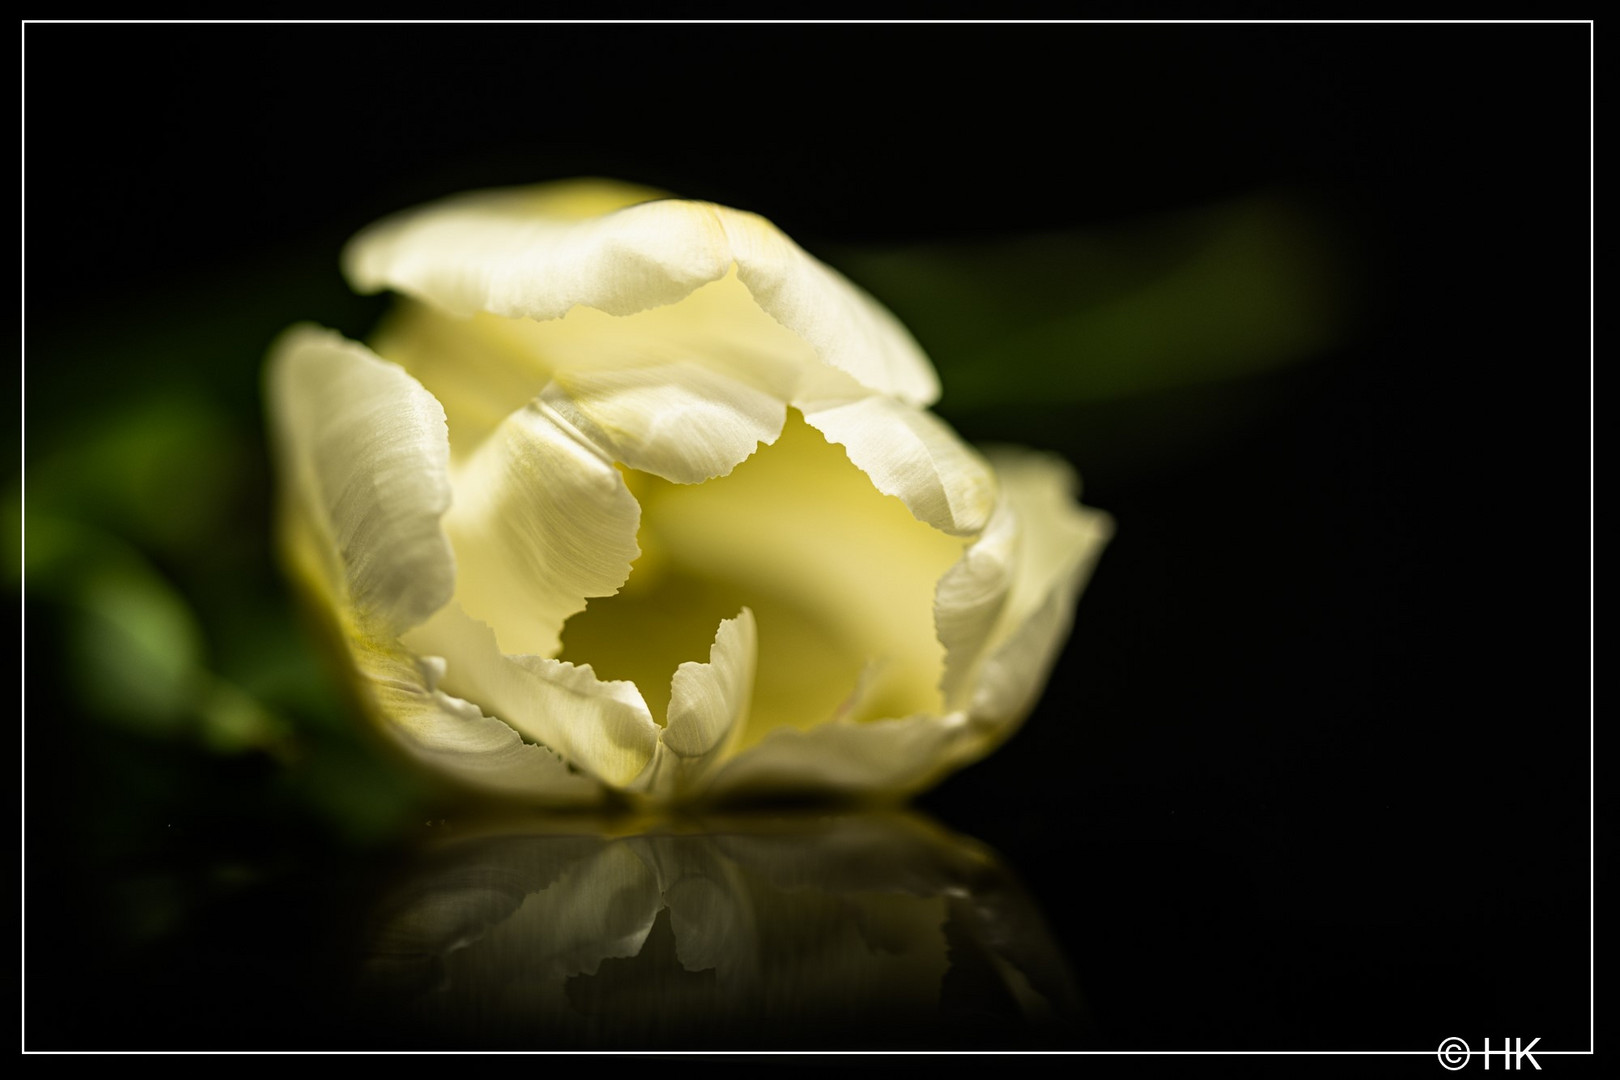 Die weiße Tulpe